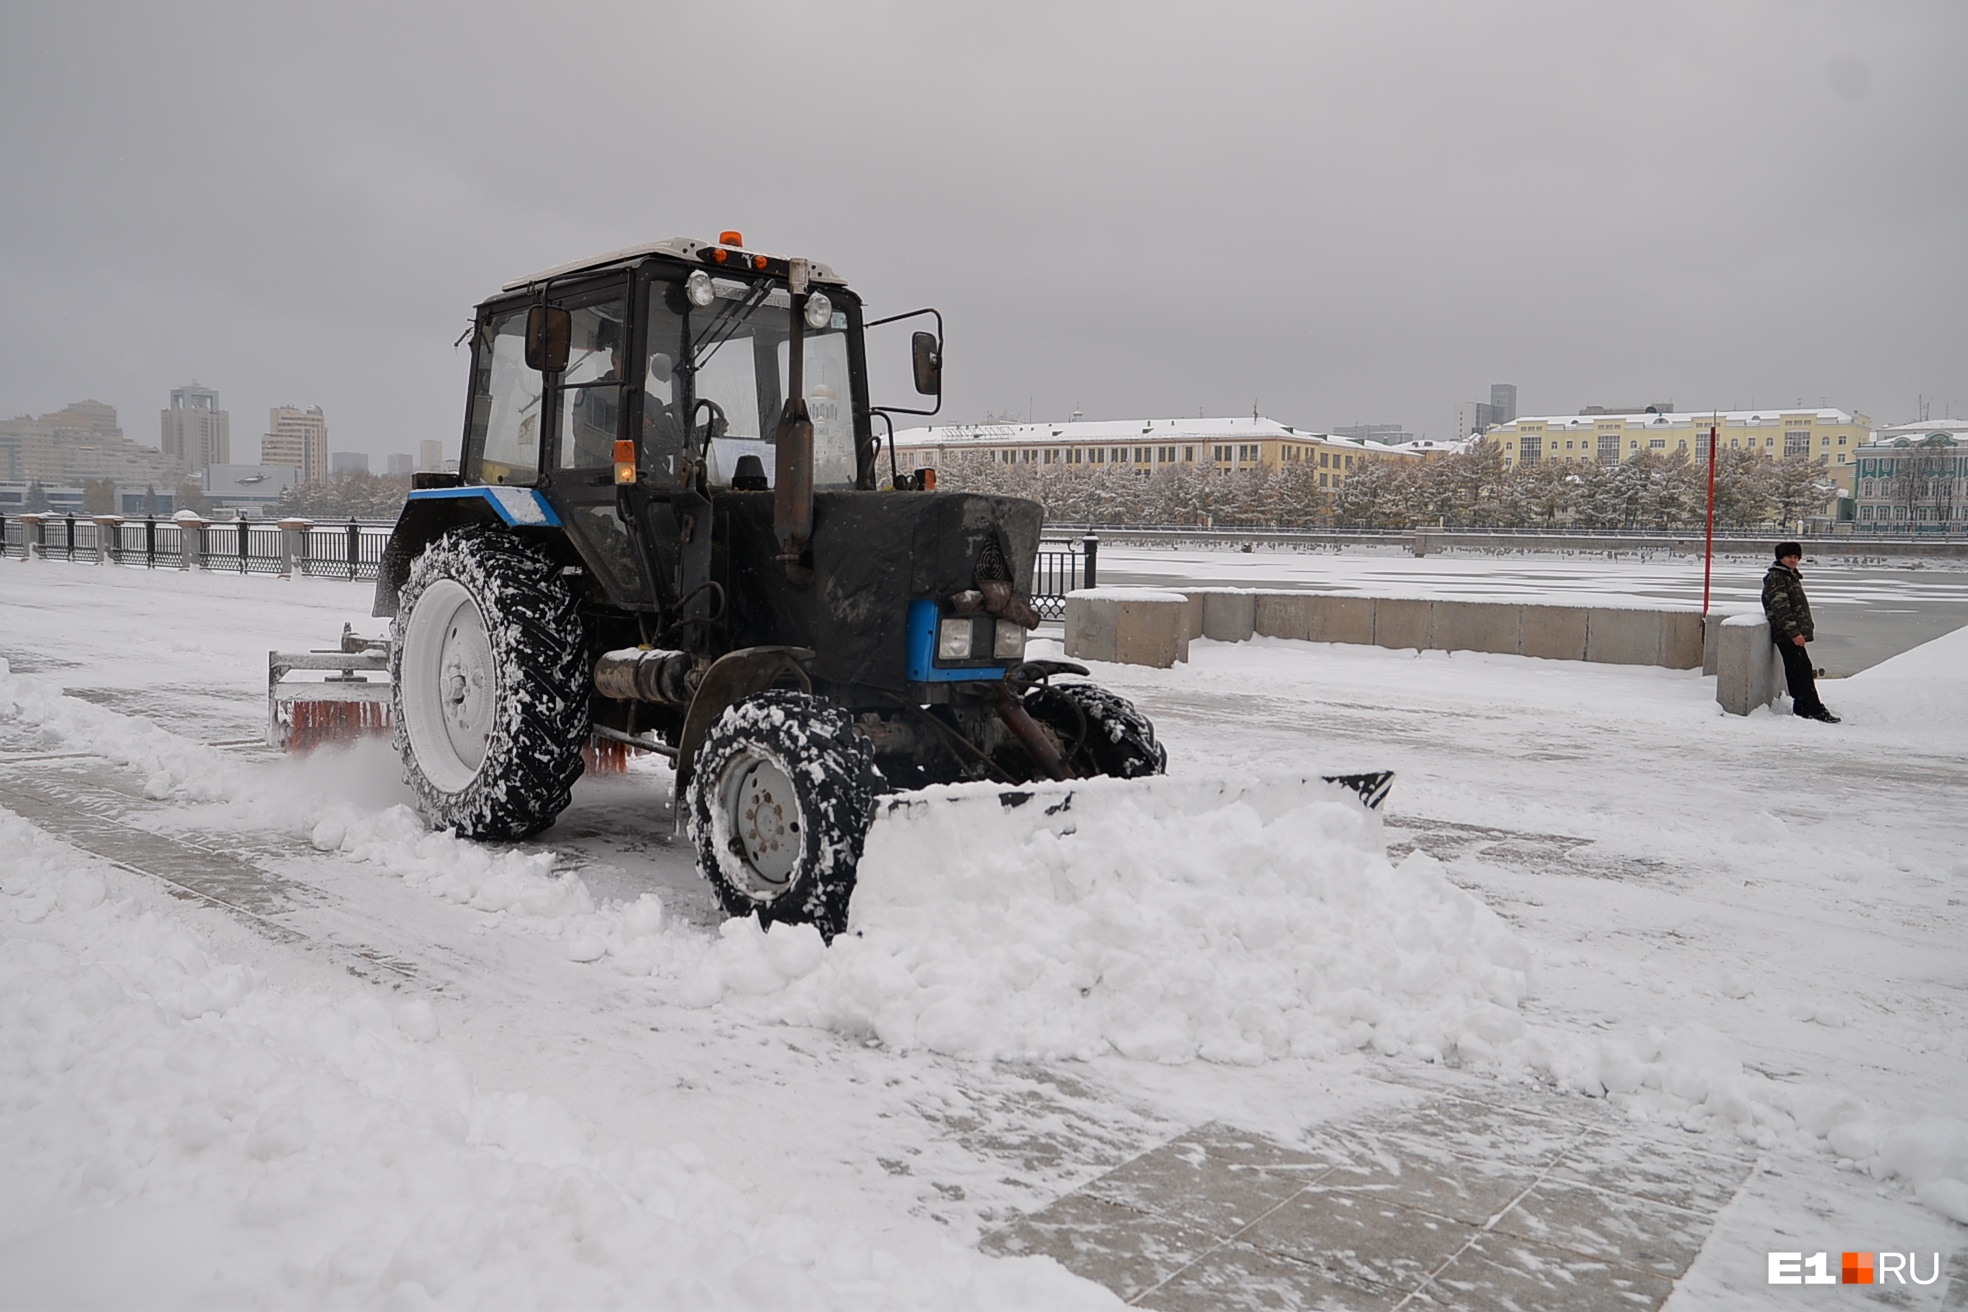 Почему снег не плавят, а вывозят за город? Простое объяснение мэра Екатеринбурга